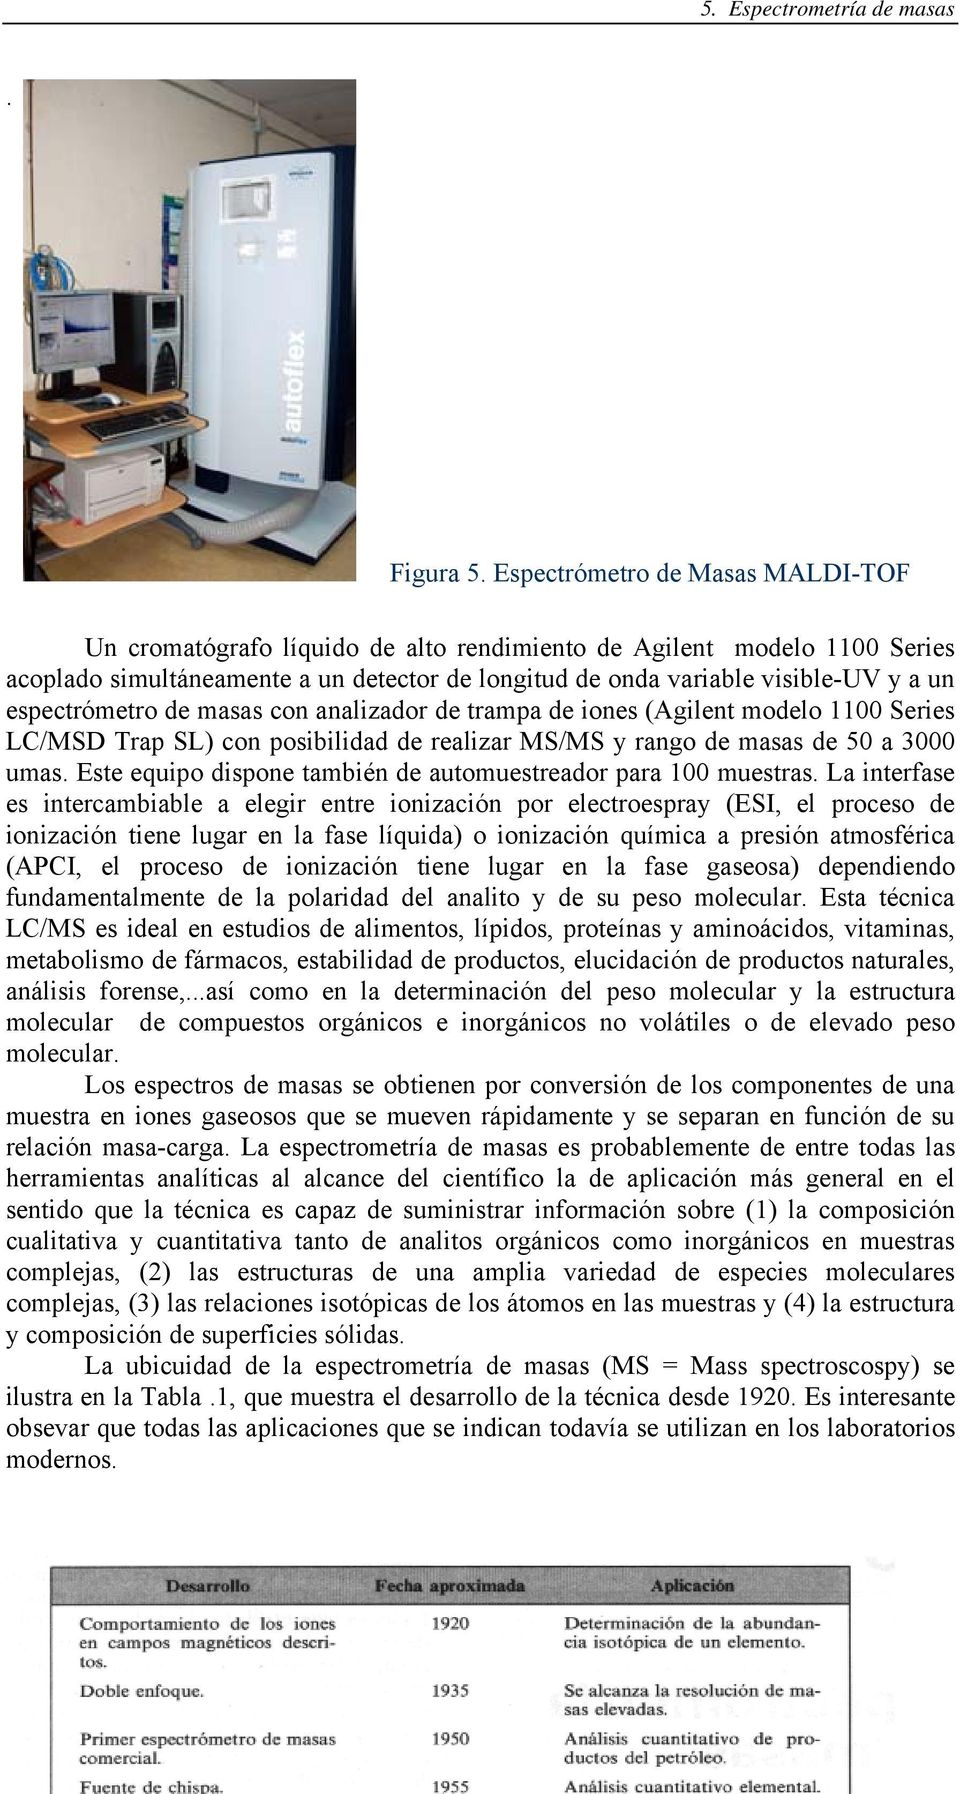 espectrómetro de masas con analizador de trampa de iones (Agilent modelo 1100 Series LC/MSD Trap SL) con posibilidad de realizar MS/MS y rango de masas de 50 a 3000 umas.